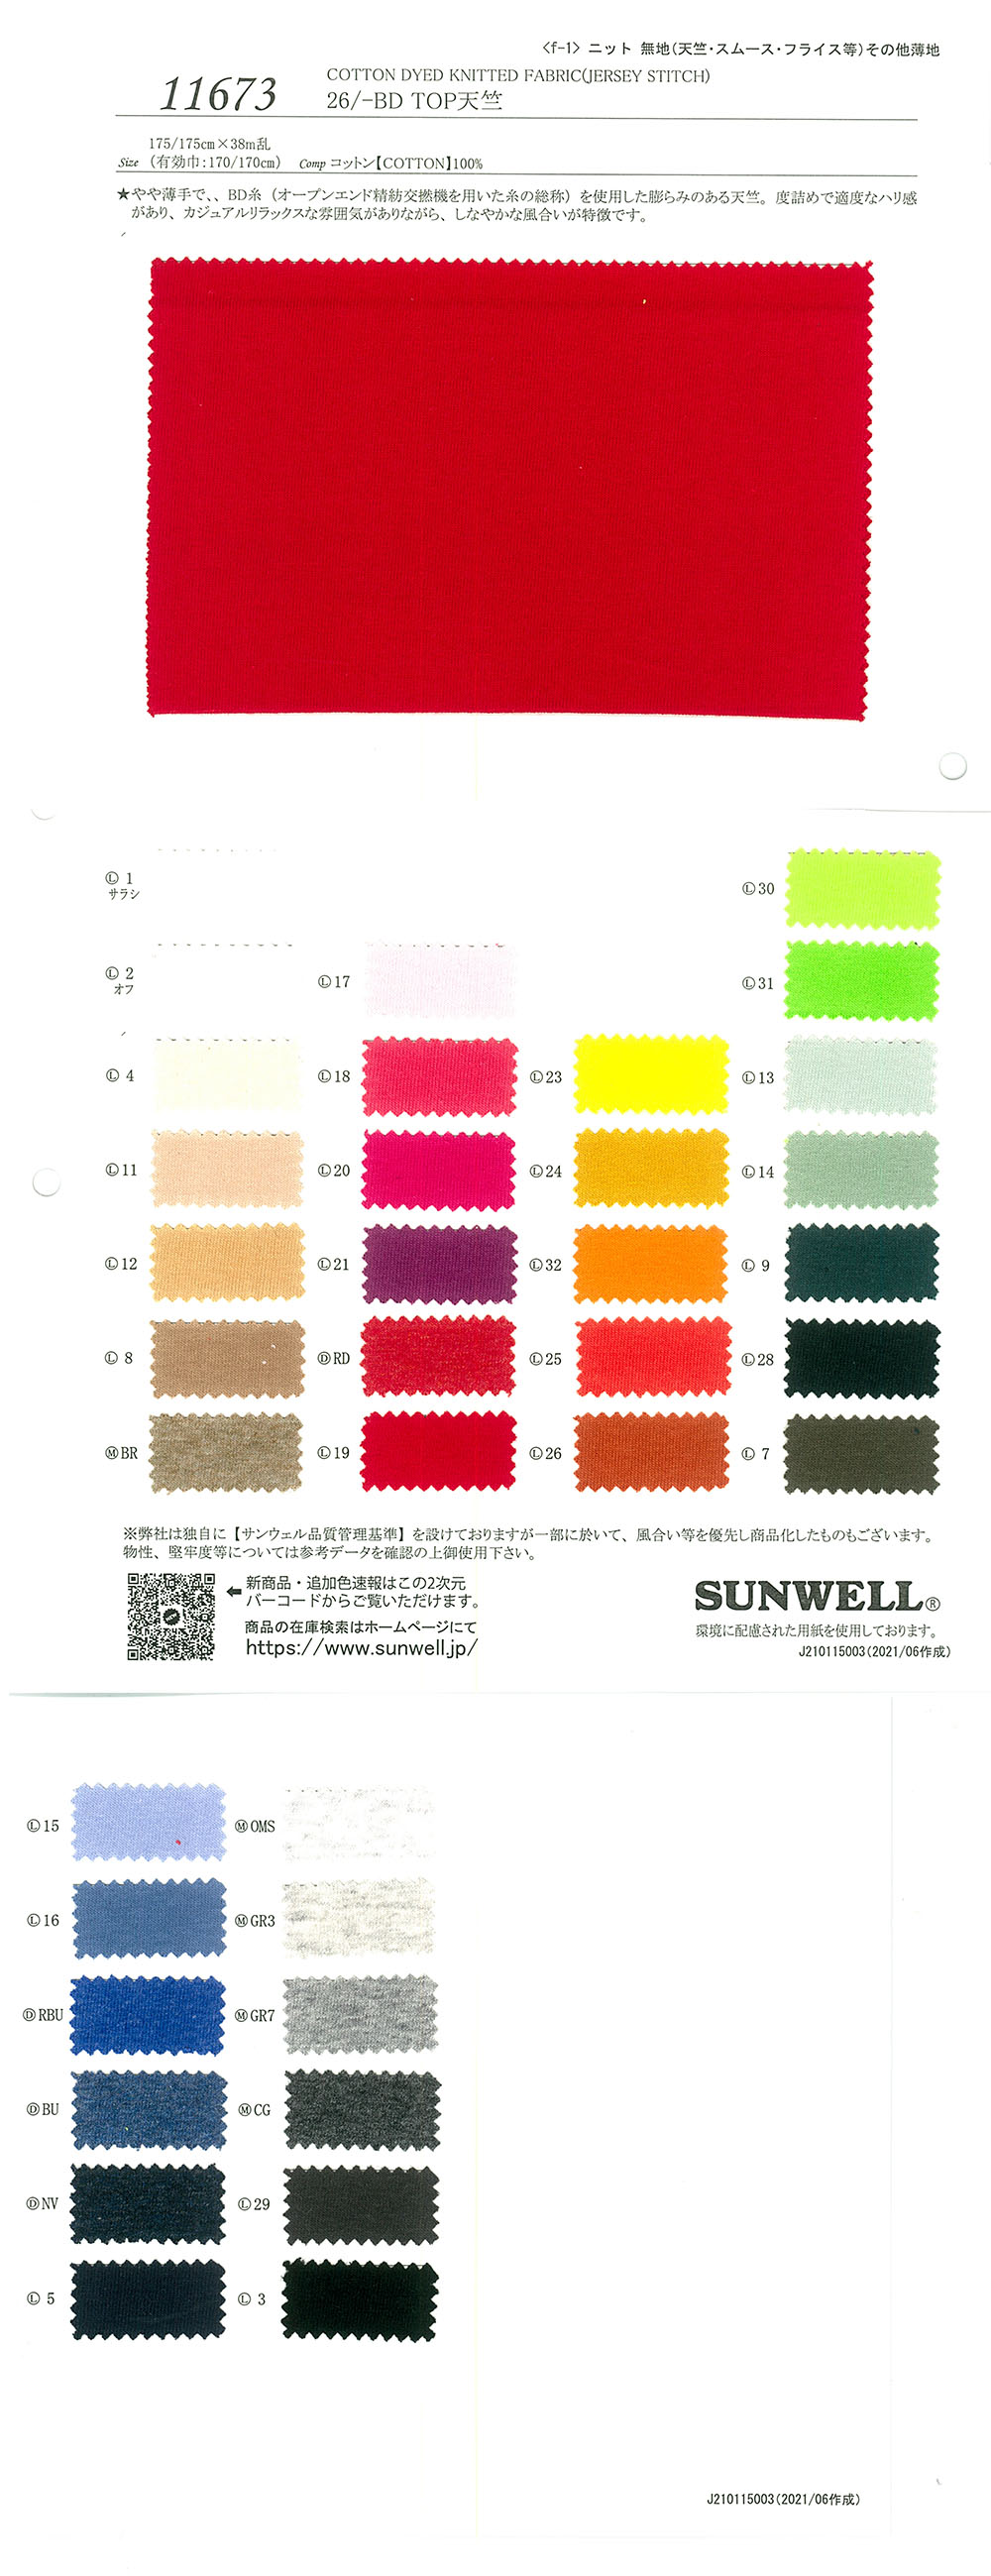 11673 26/-BD TOP Coton Tianzhu Coton[Fabrication De Textile] SUNWELL